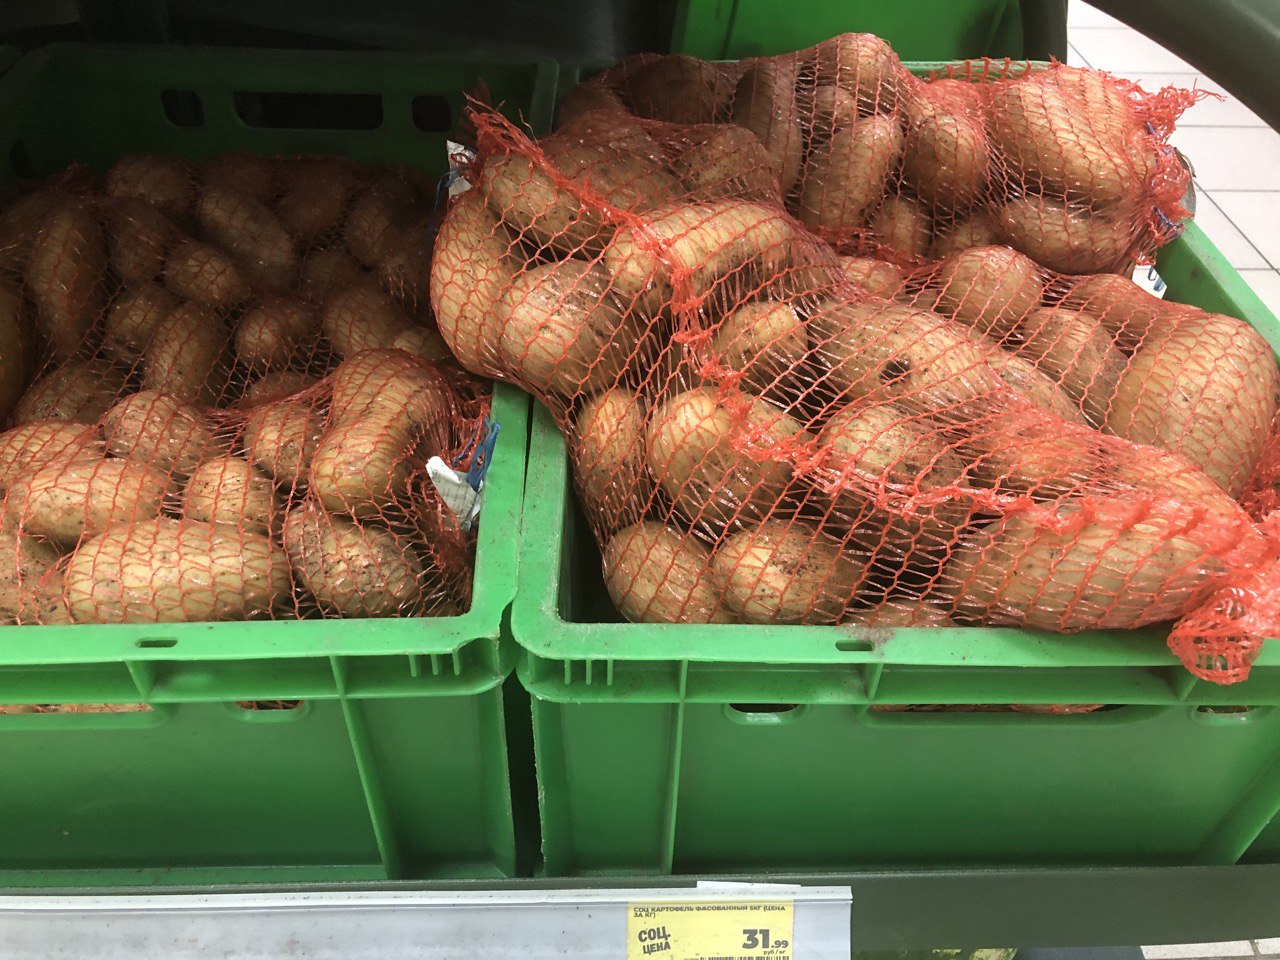 Морковь и томаты выросли в цене, а свекла и картофель — упали. Чему равен курс борщкоина сегодня?